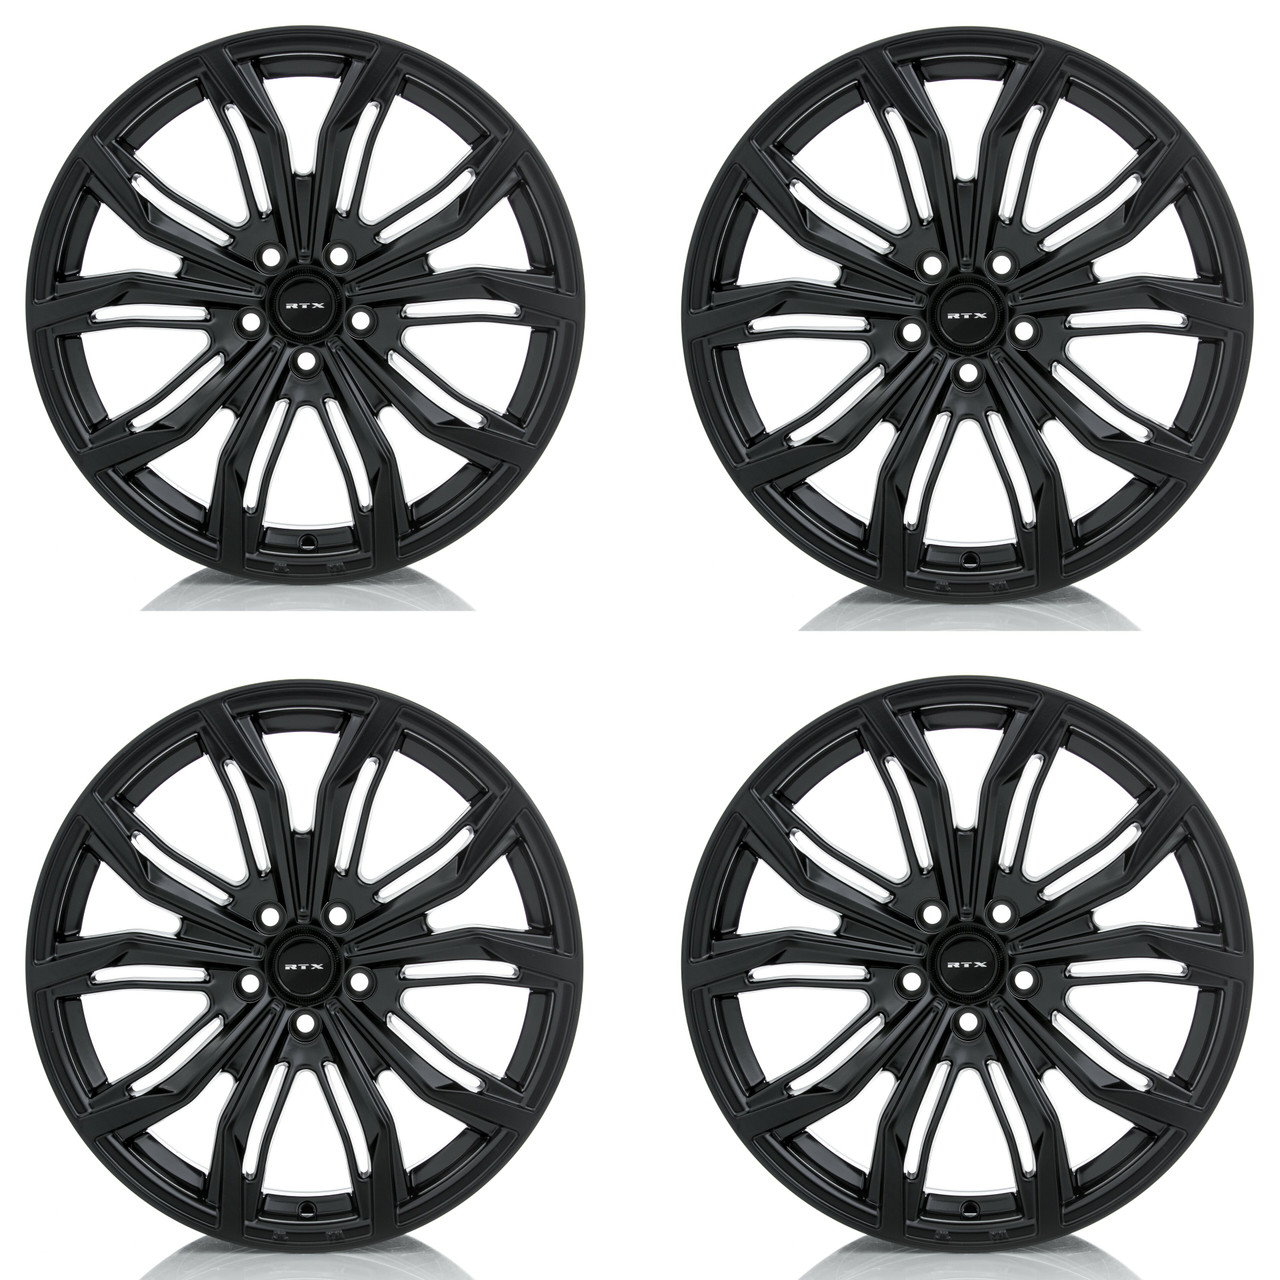 Set 4 17" RTX Black Widow Satin Black Wheels 17x7.5 5x112 42mm Rims